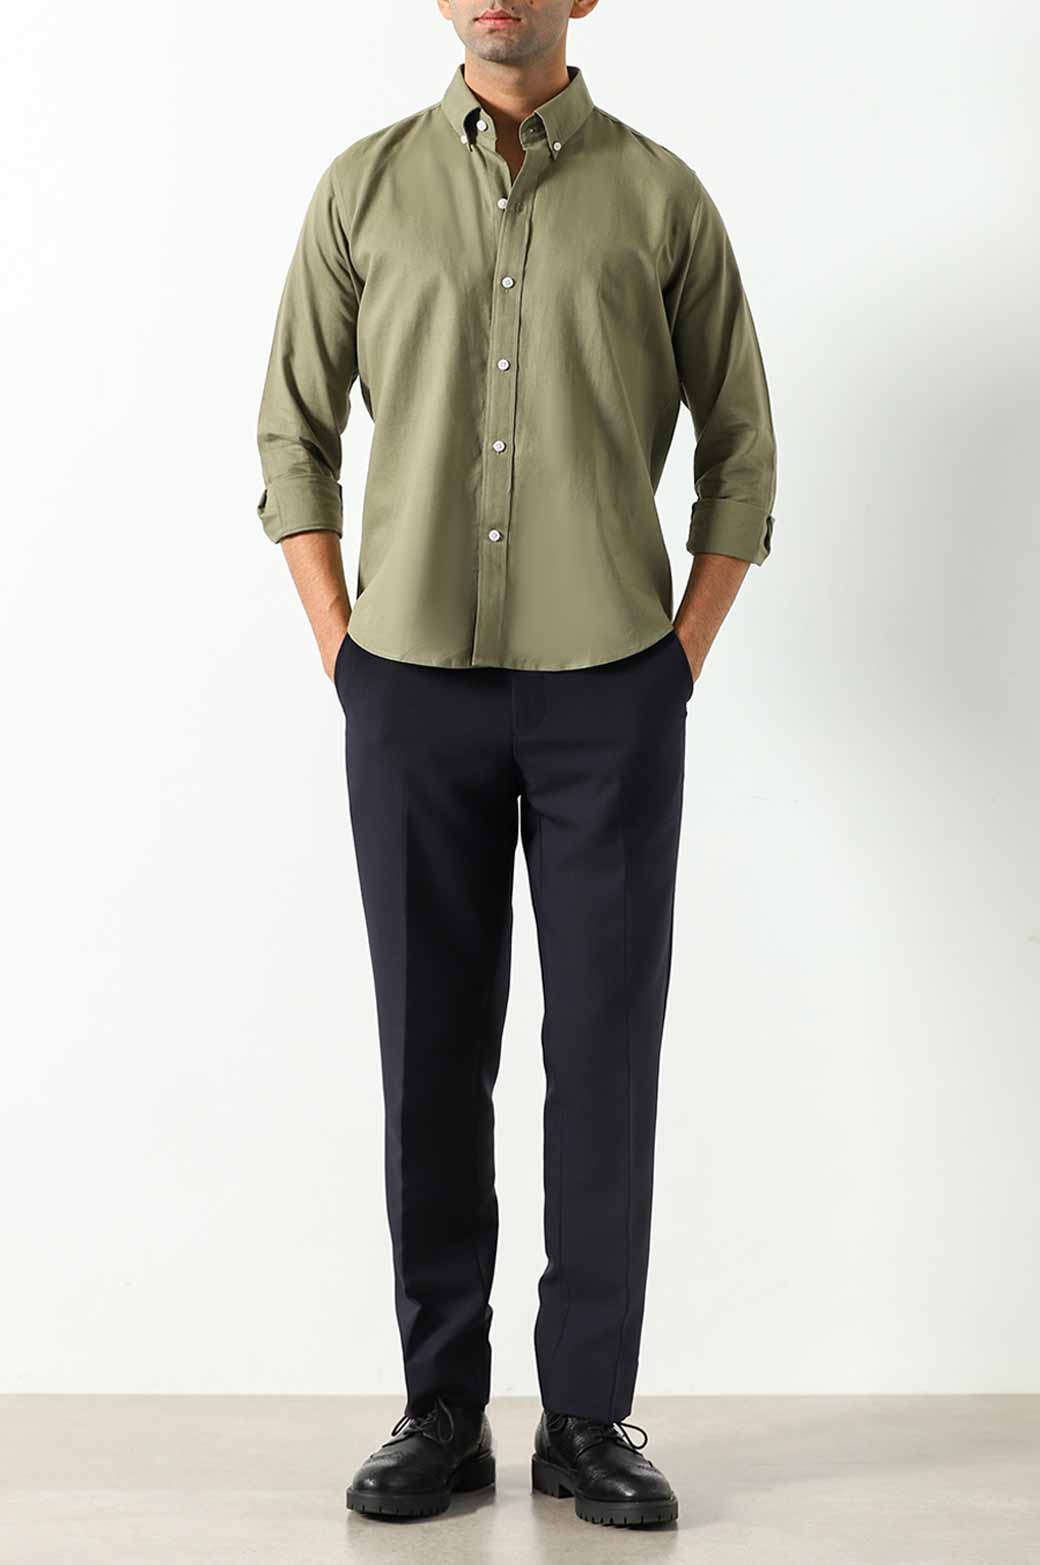 black and green outfit | Abbigliamento, Stile, Vestiti